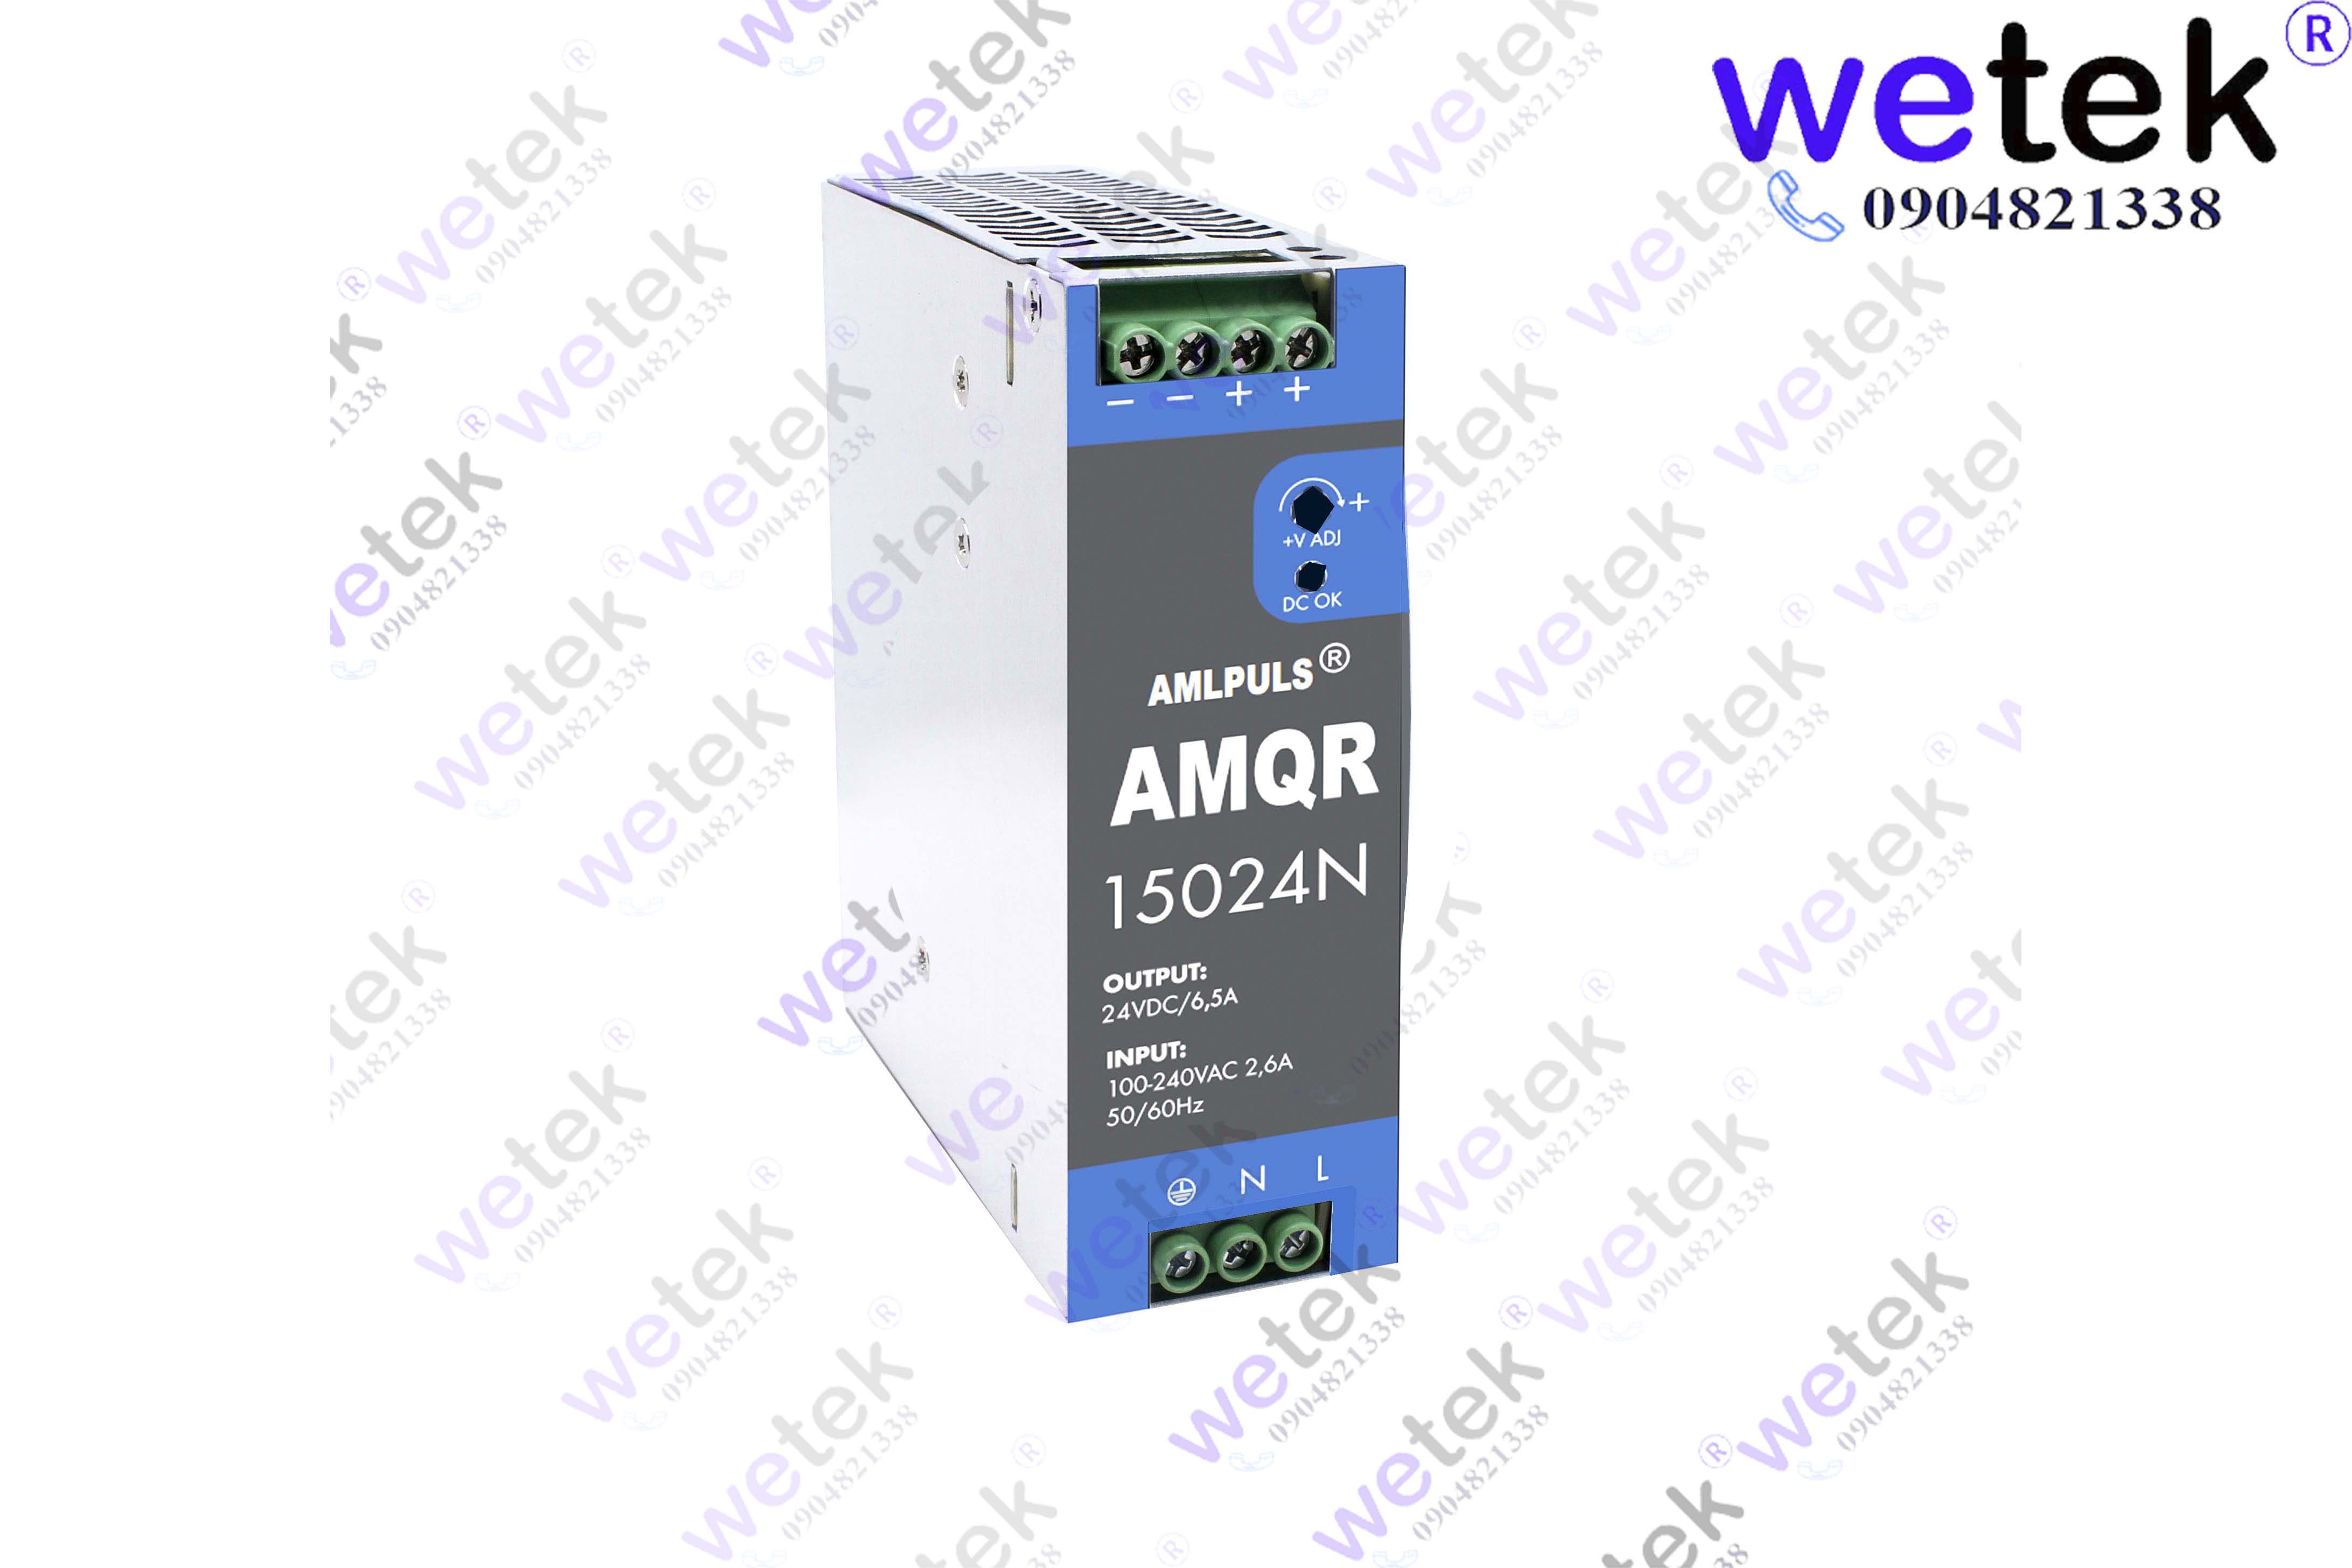 Nguồn xung cài thanh DIN AMQR15024N 150W 24Vdc thương hiệu AMLPULS